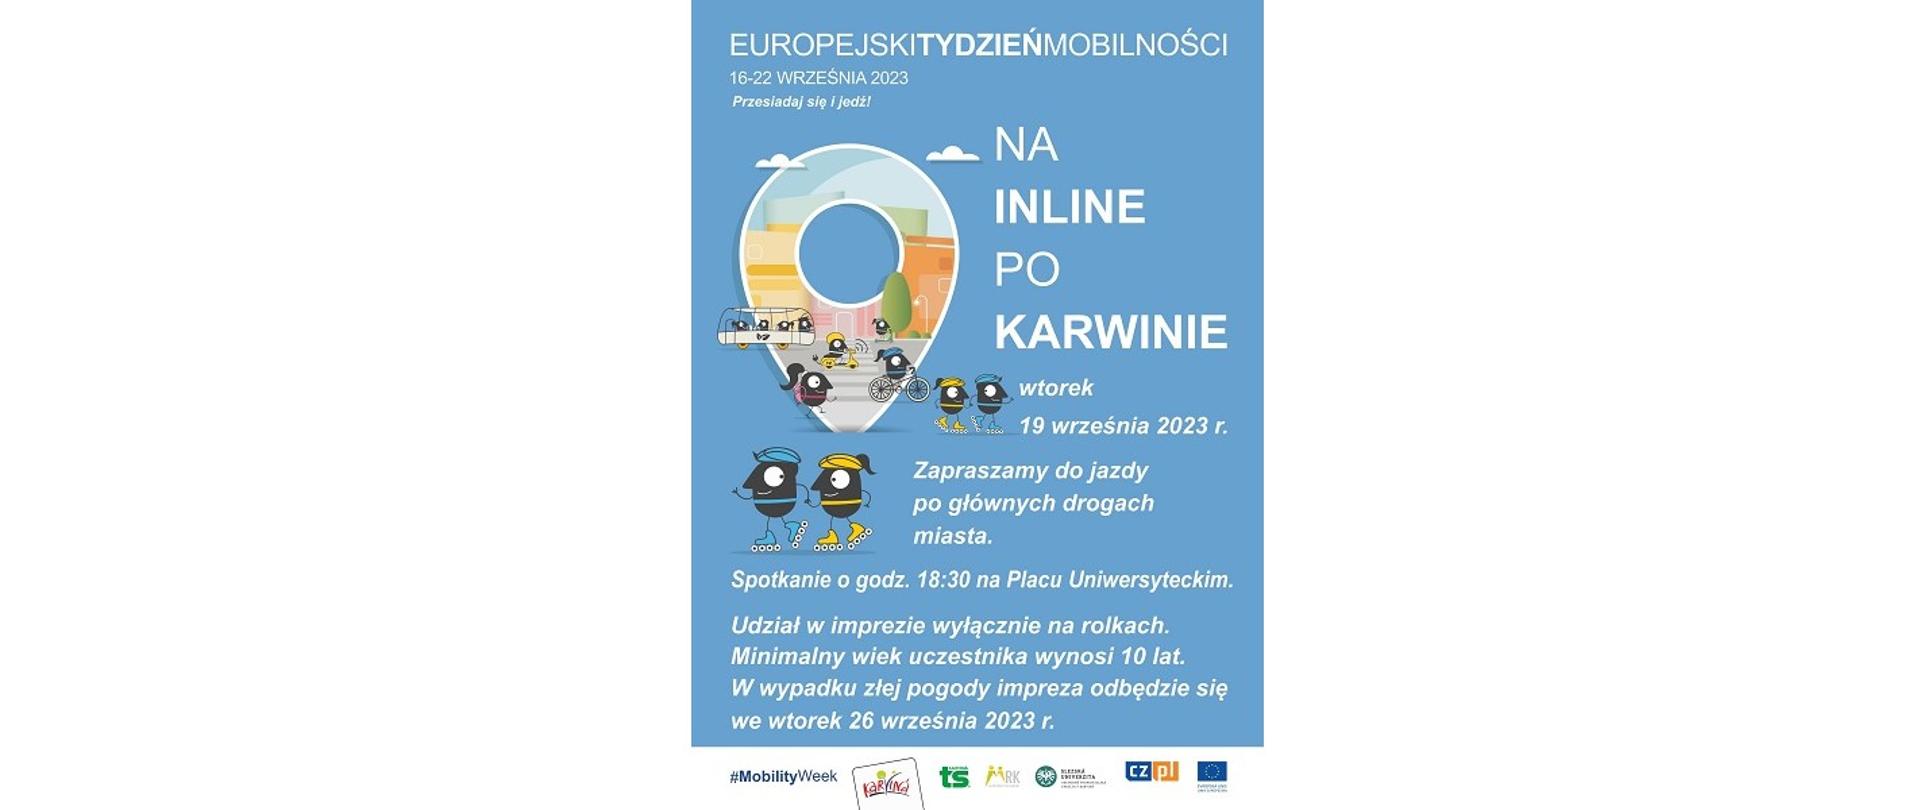 Impreza „Na inline po Karwinie”. Europejski Tydzień Mobilności (16-22 września 2023). Karwina, wtorek 19 września, godzina 18.30.